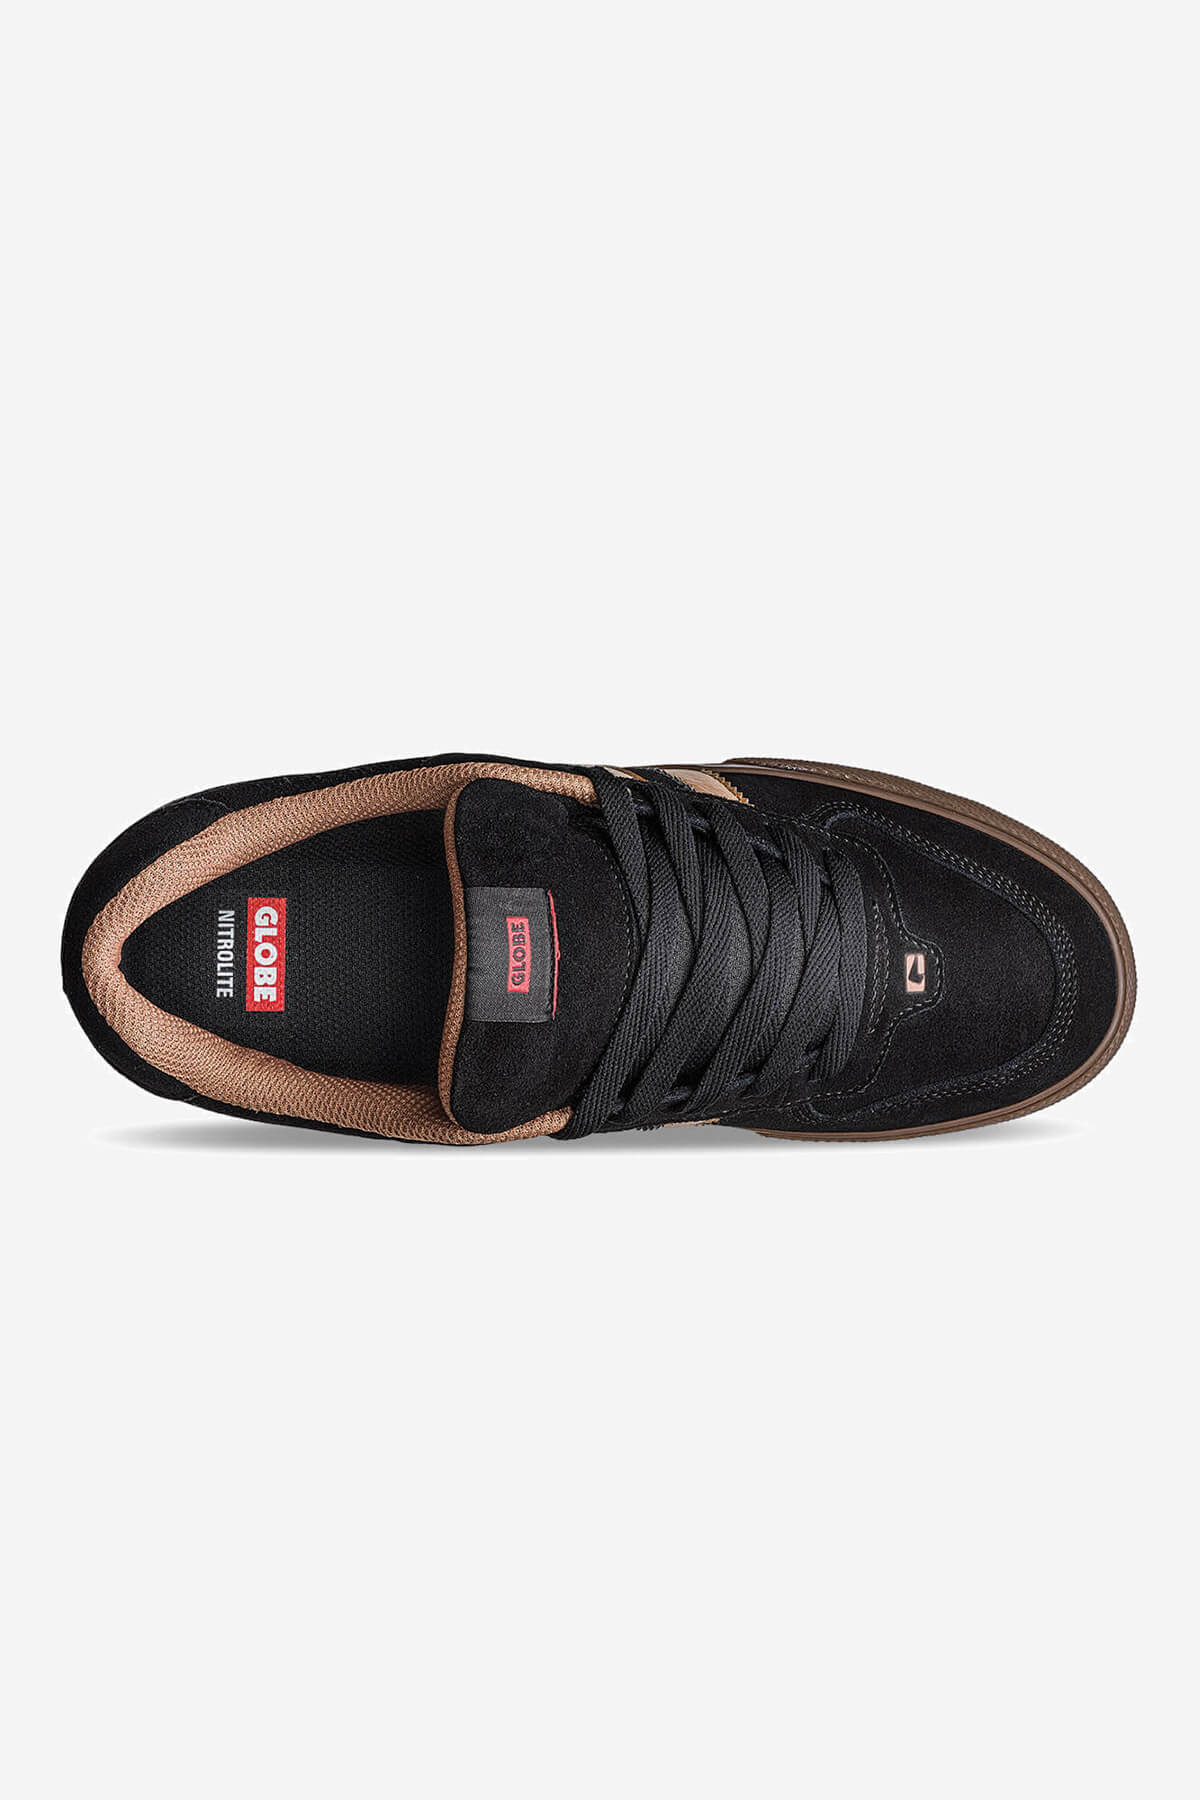 Encore-2 Black/Brown skateboard  schoenen